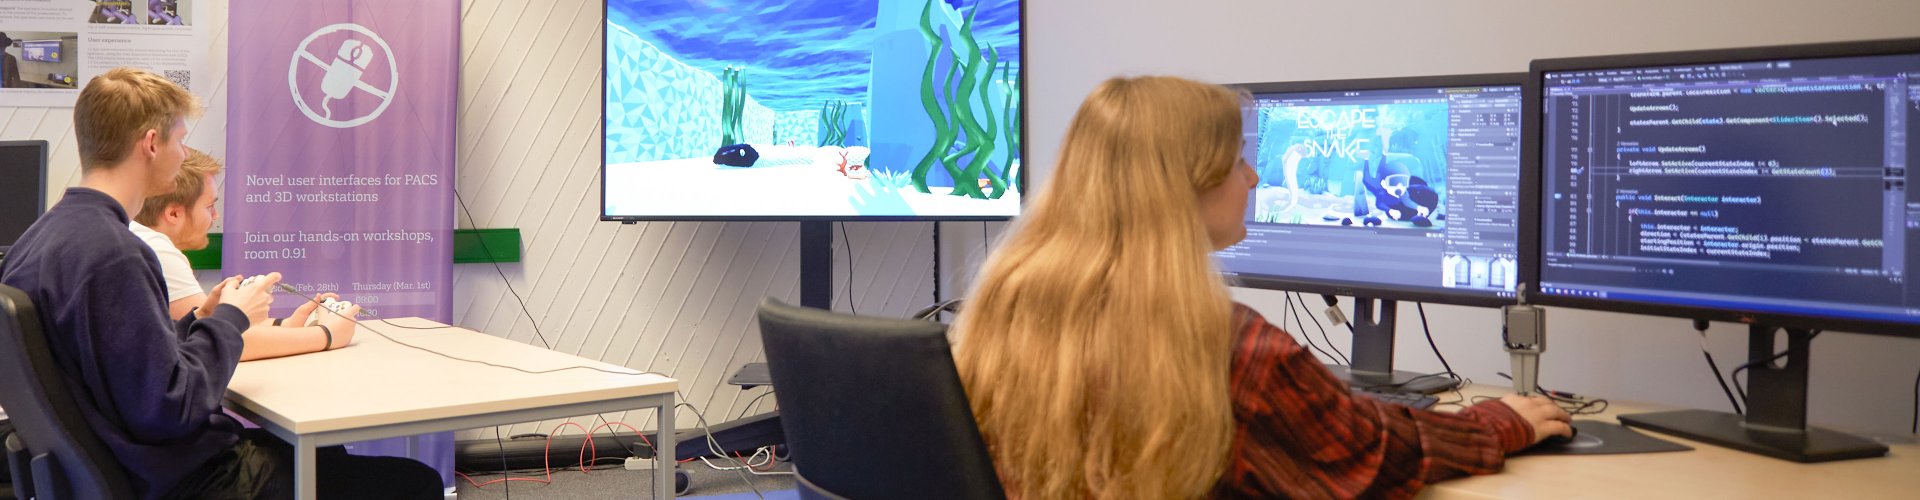 Studierende vor Rechnern und Bildschirmen an denen sie arbeiten. Auf den Bildschirmen ist eine animierte Unterwasserwelt zu sehen.